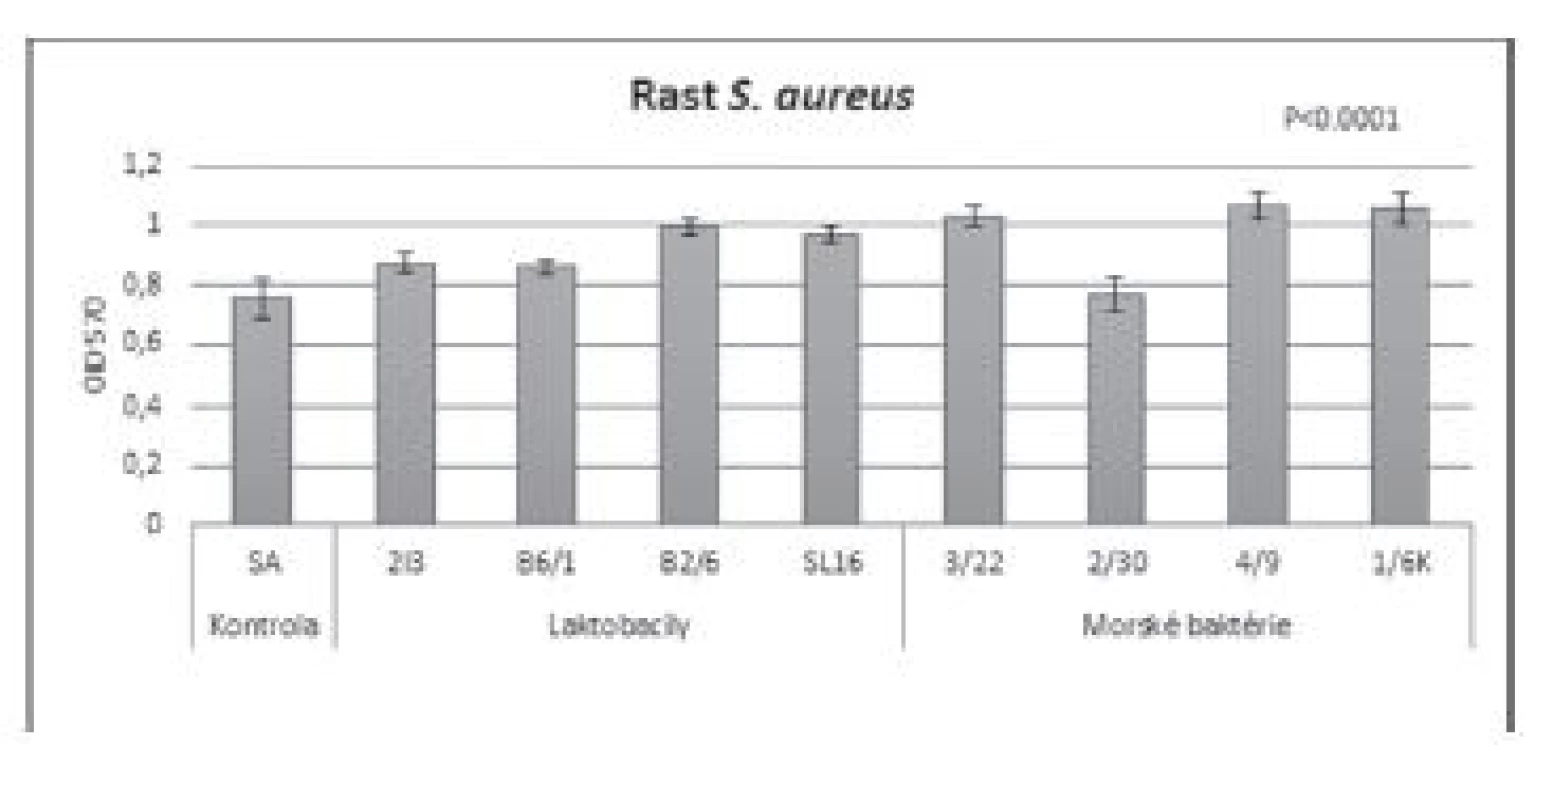 Vplyv BS (c = 8,57 mg/ml) izolovaných z laktobacilov
a morských baktérií na rast S. aureus CCM 3953